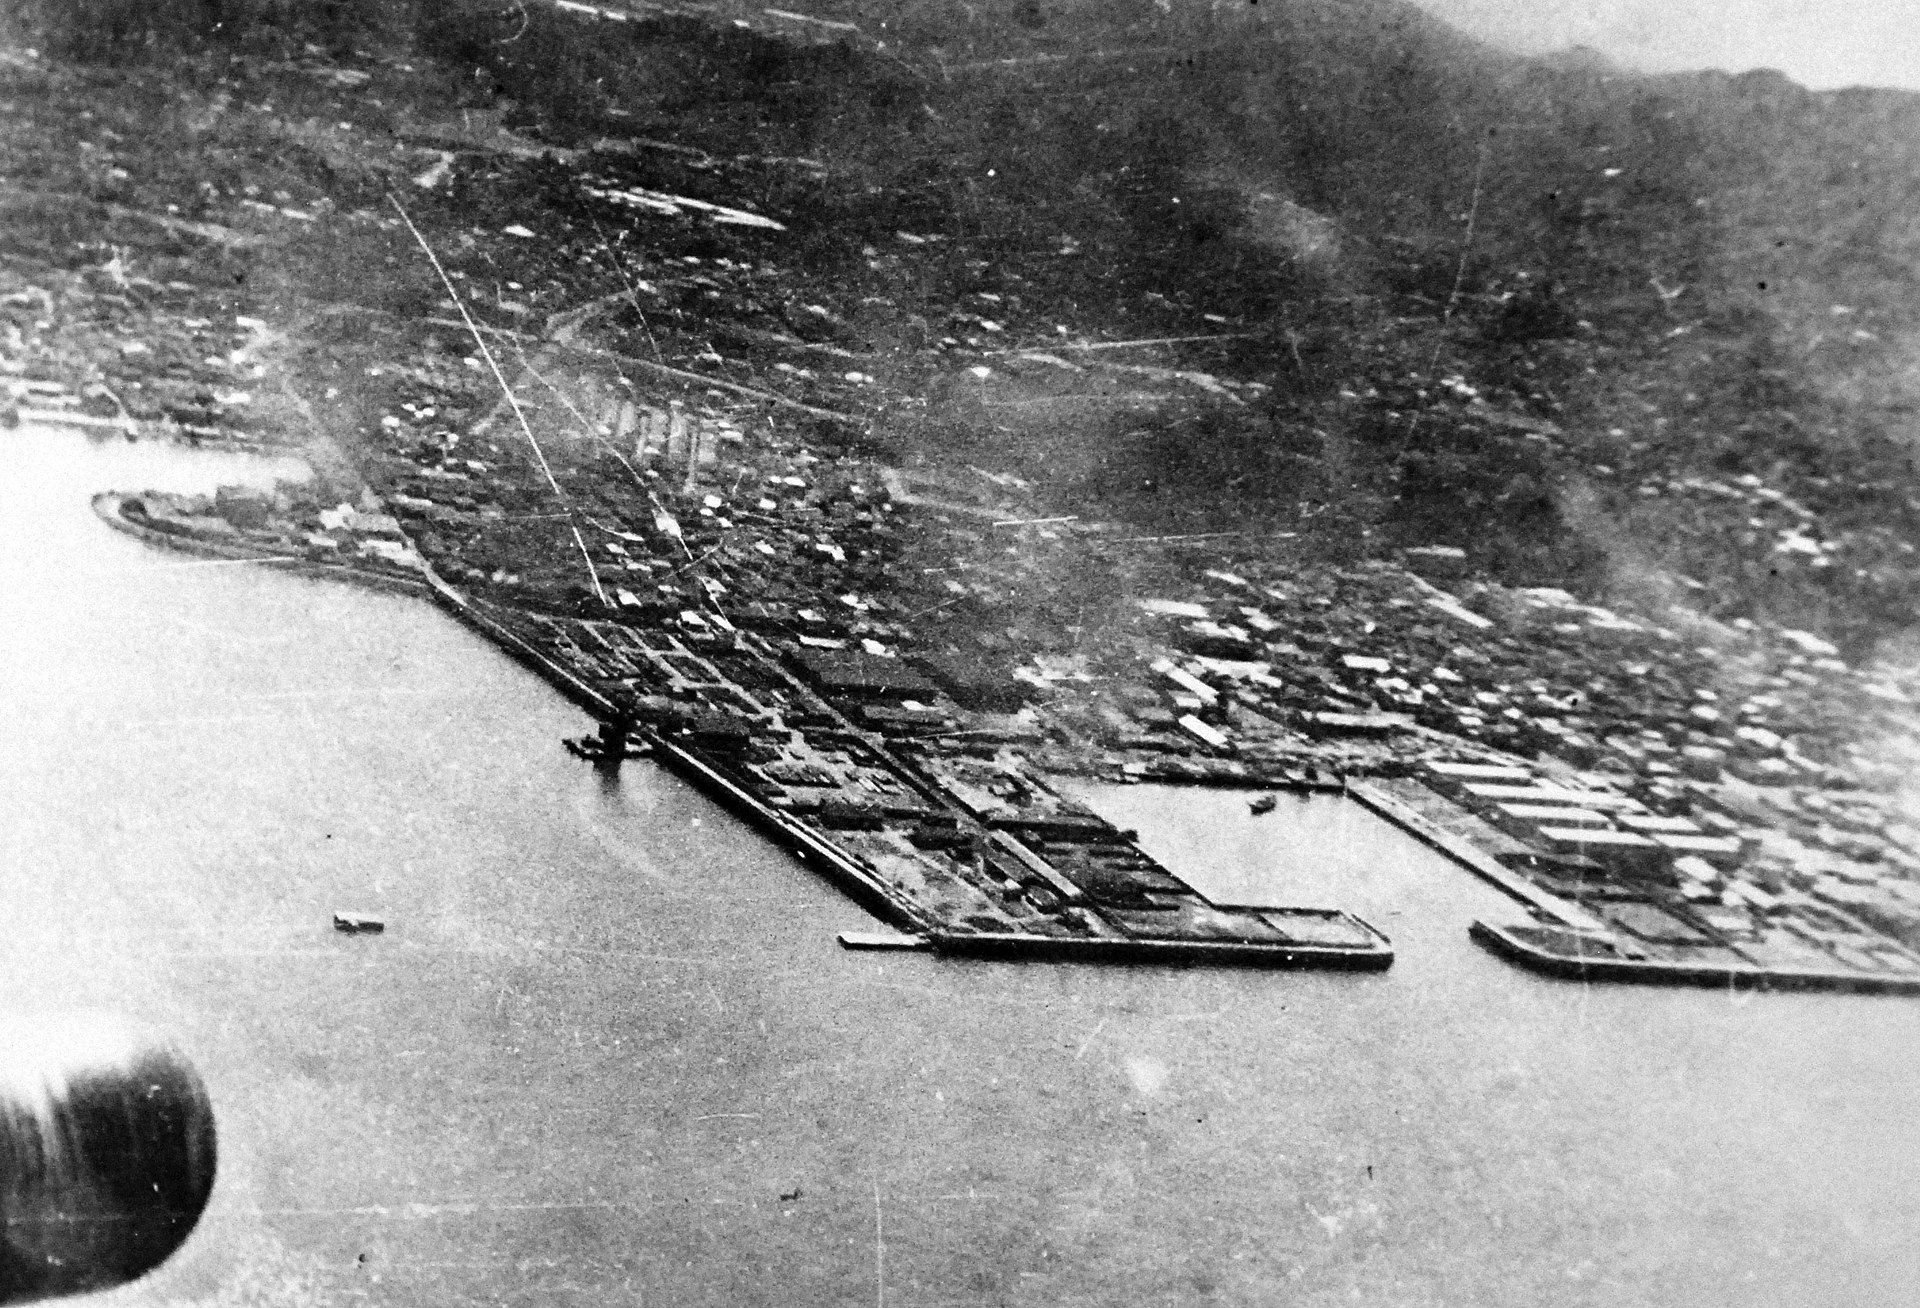 Primer bombardeo a Tokio - despues de Pearl Harbor- 1942 UB4HSI55OBFZ5IN34RDSOJFCII